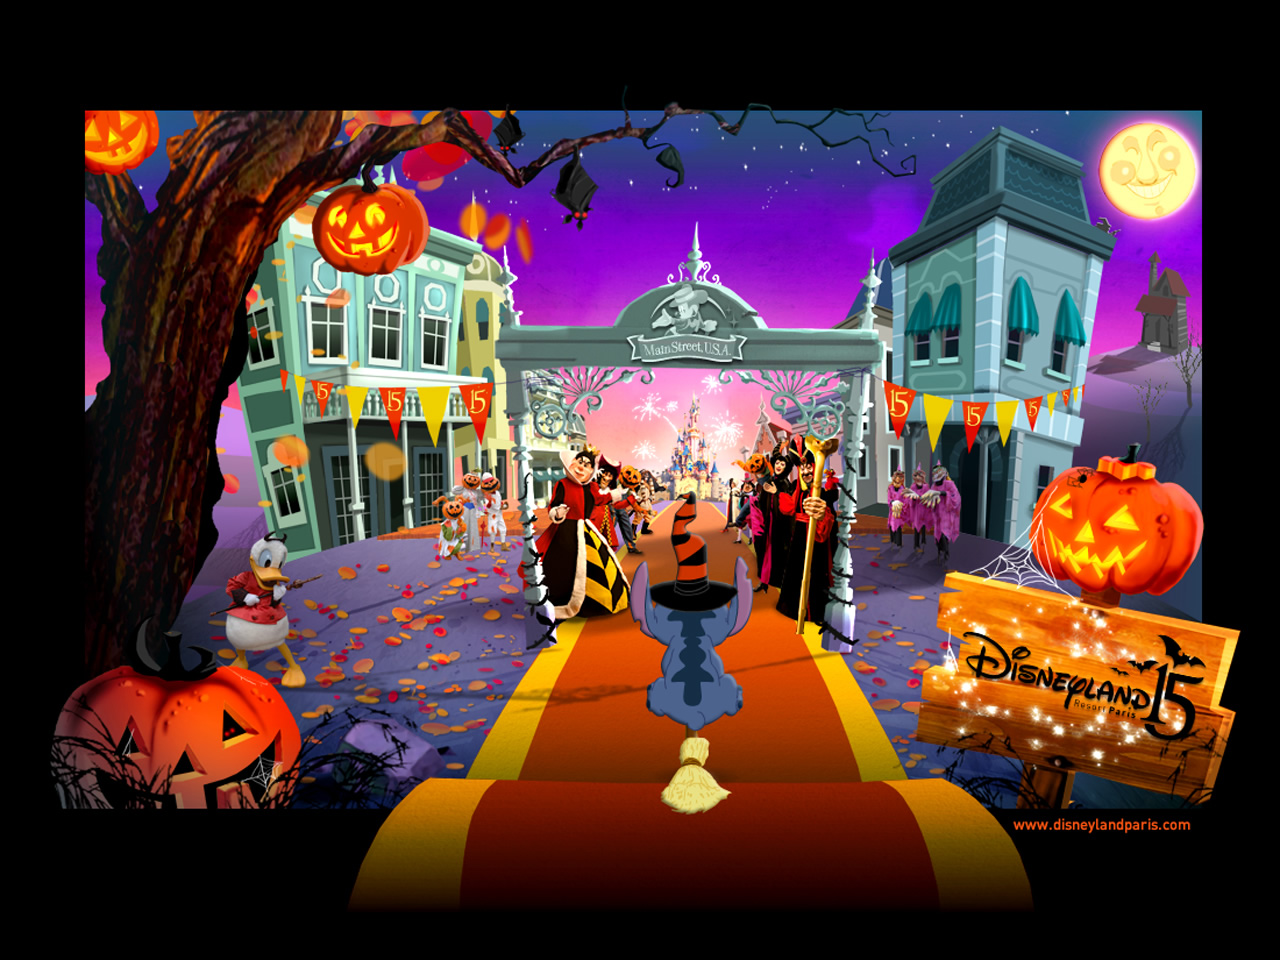 Disney Halloween Wallpaper Image Amp Pictures Becuo